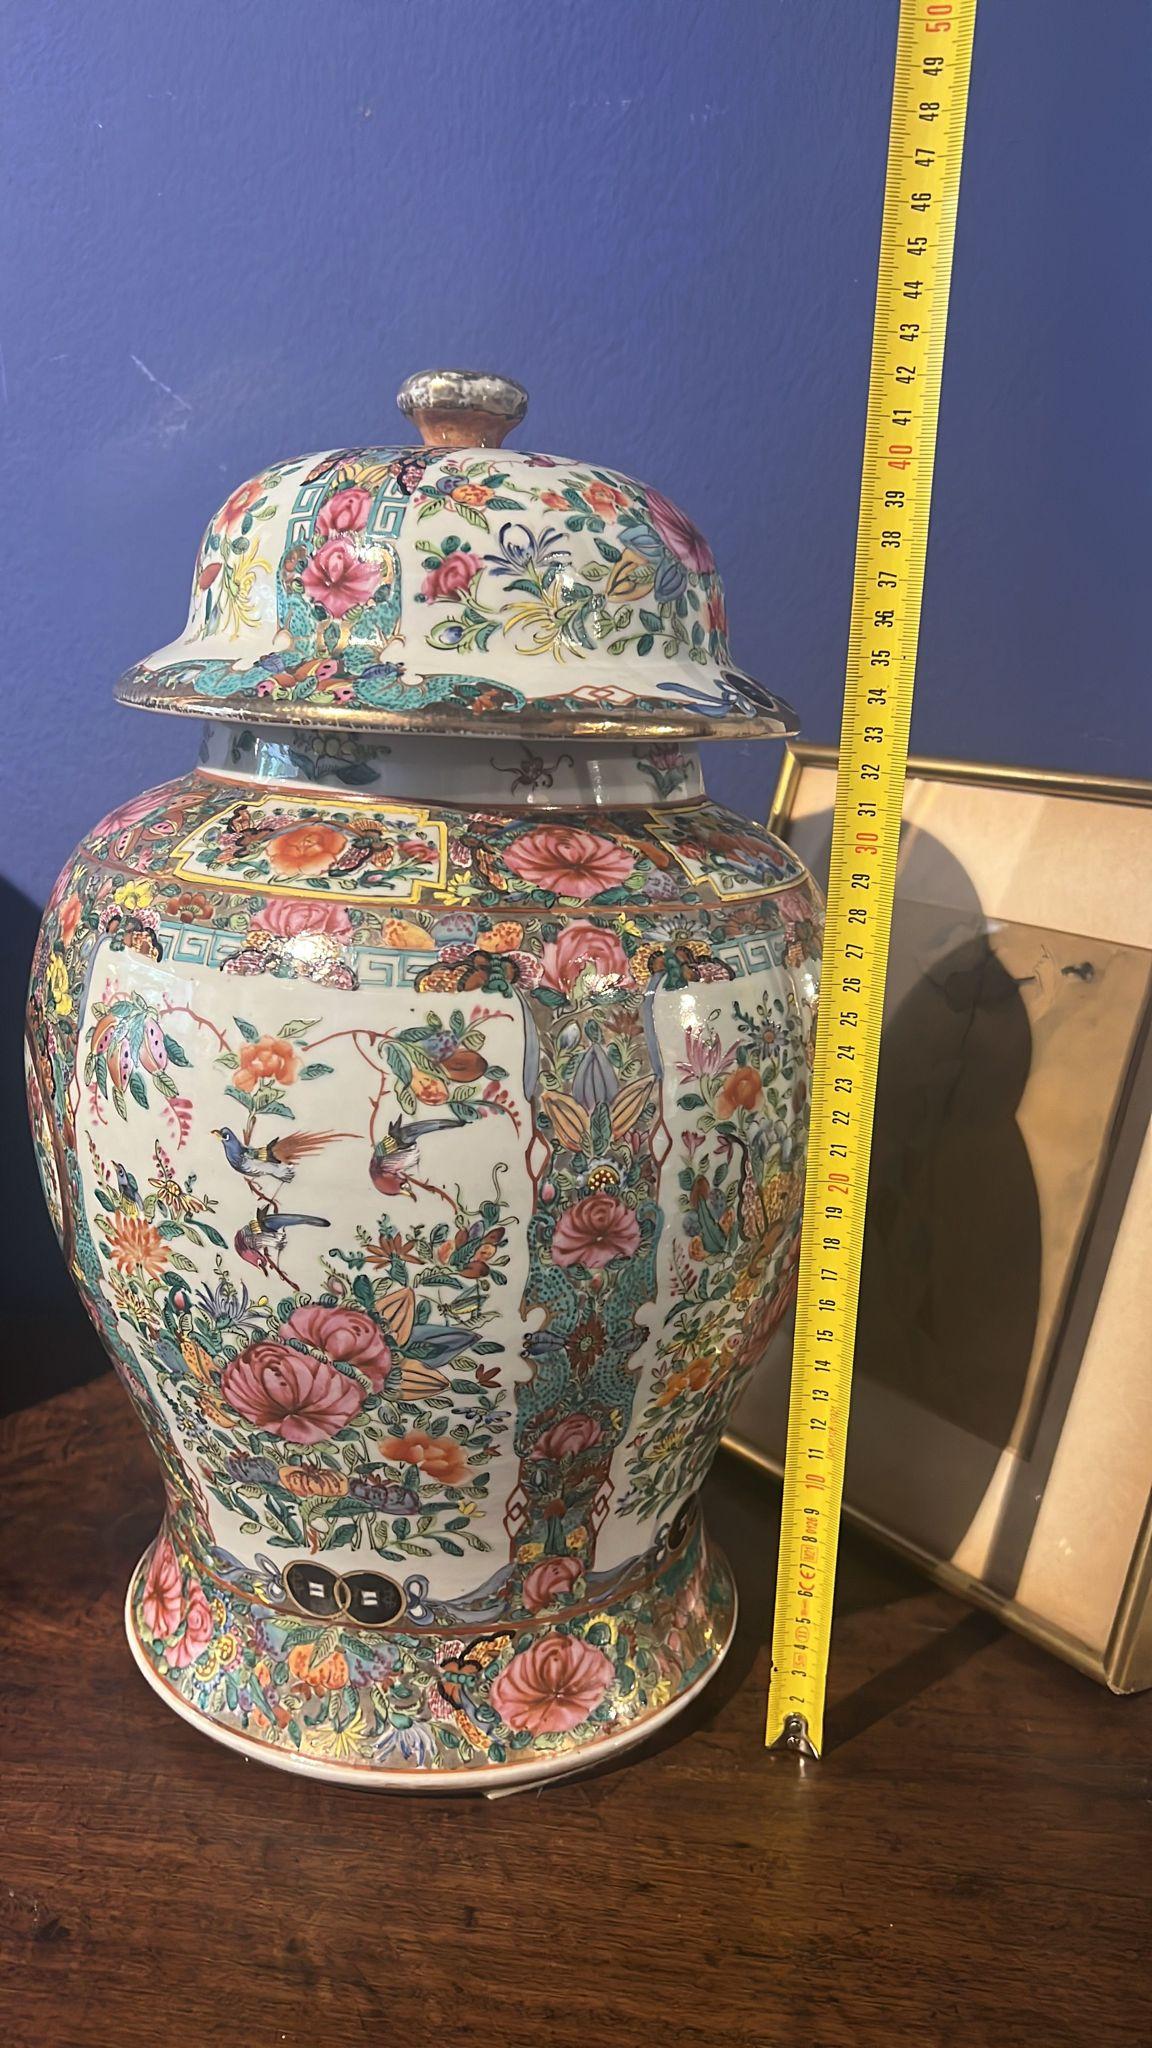 Vases chinois mandarins 19e siècle
parfaite condition
sans poils ni restaurations
état initial
45cm x 27cm